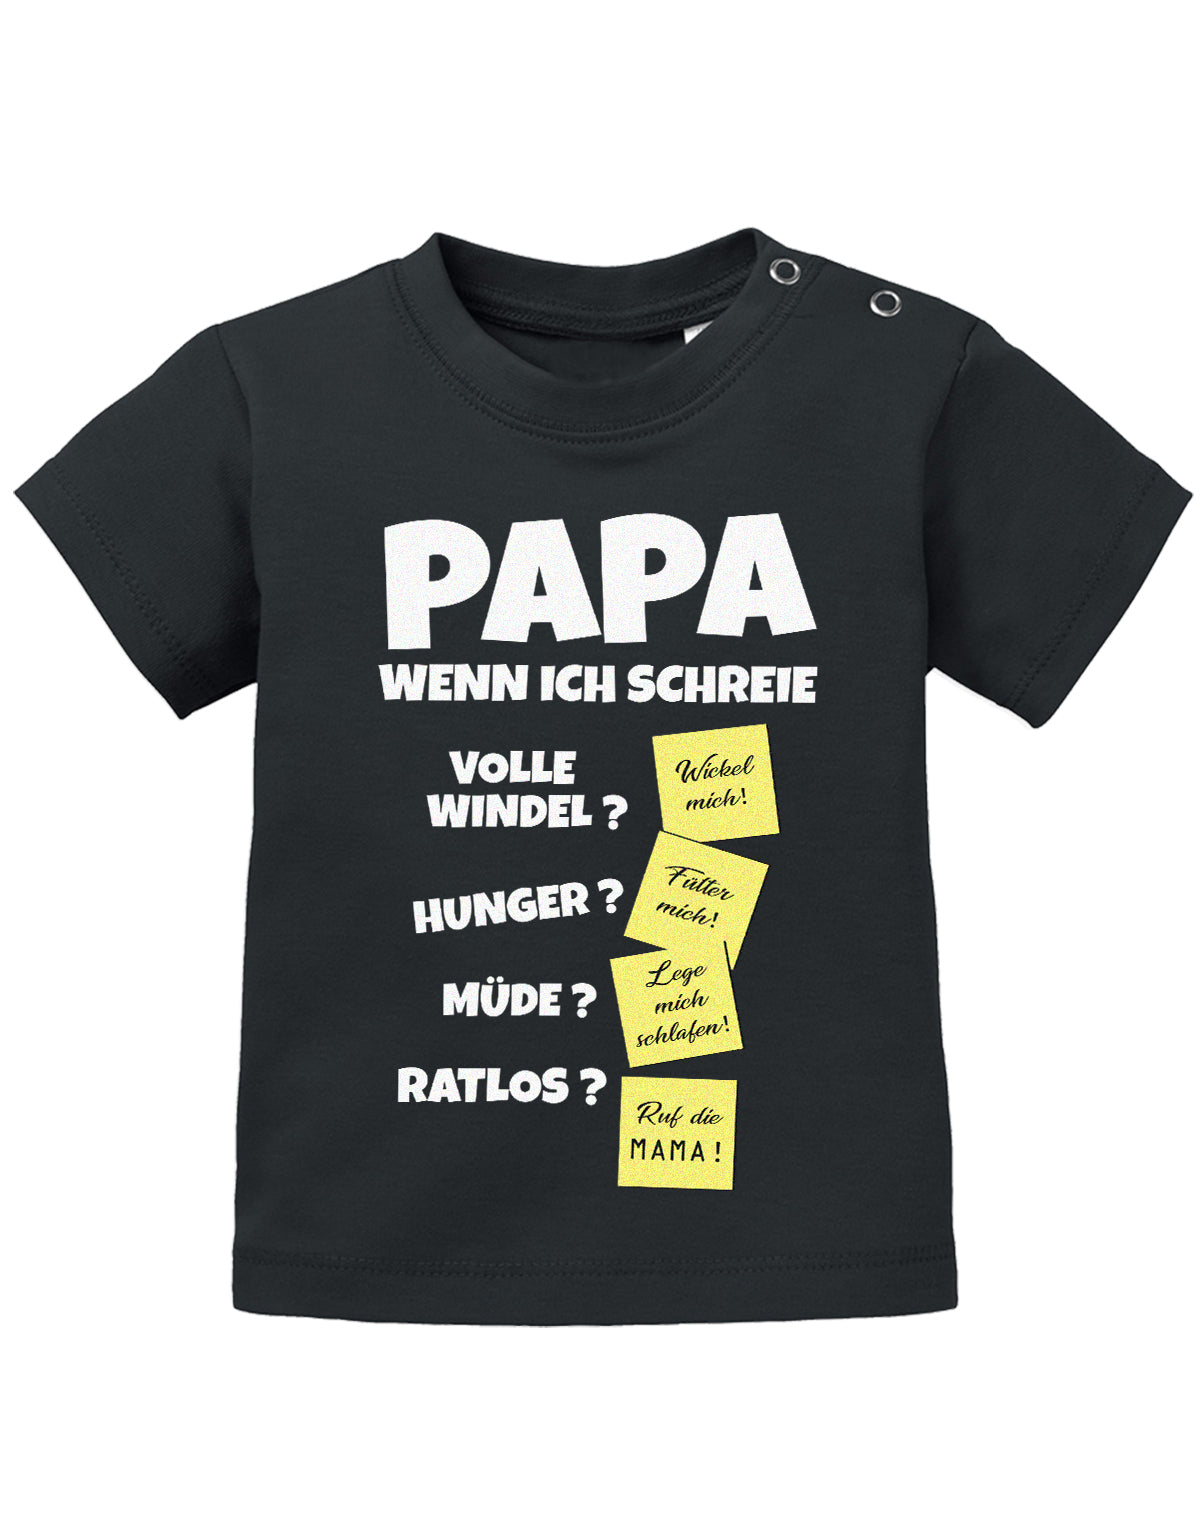 Lustiges süßes Sprüche Baby Shirt Papa wenn ich schreie - Notizen Lösungen. Schwarz